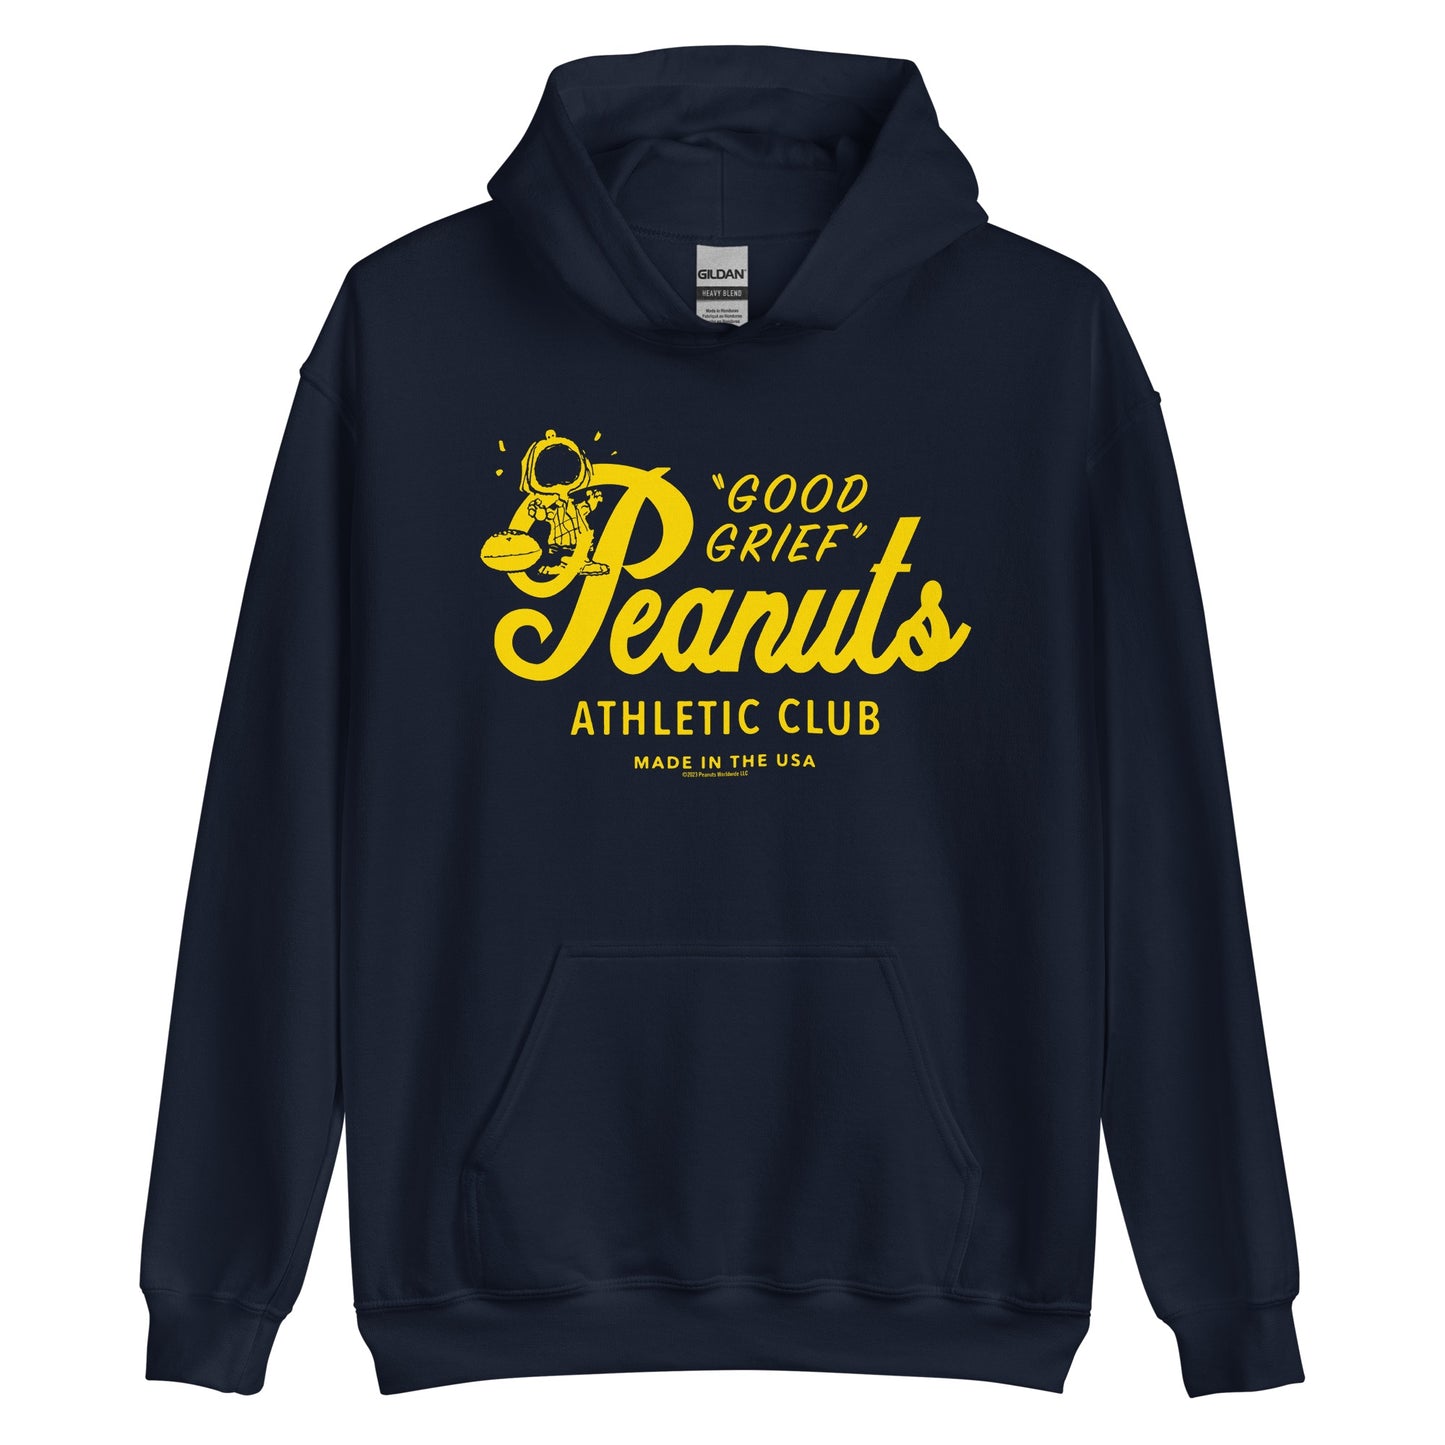 Peanuts Athletic Club Hooded Sweatshirt